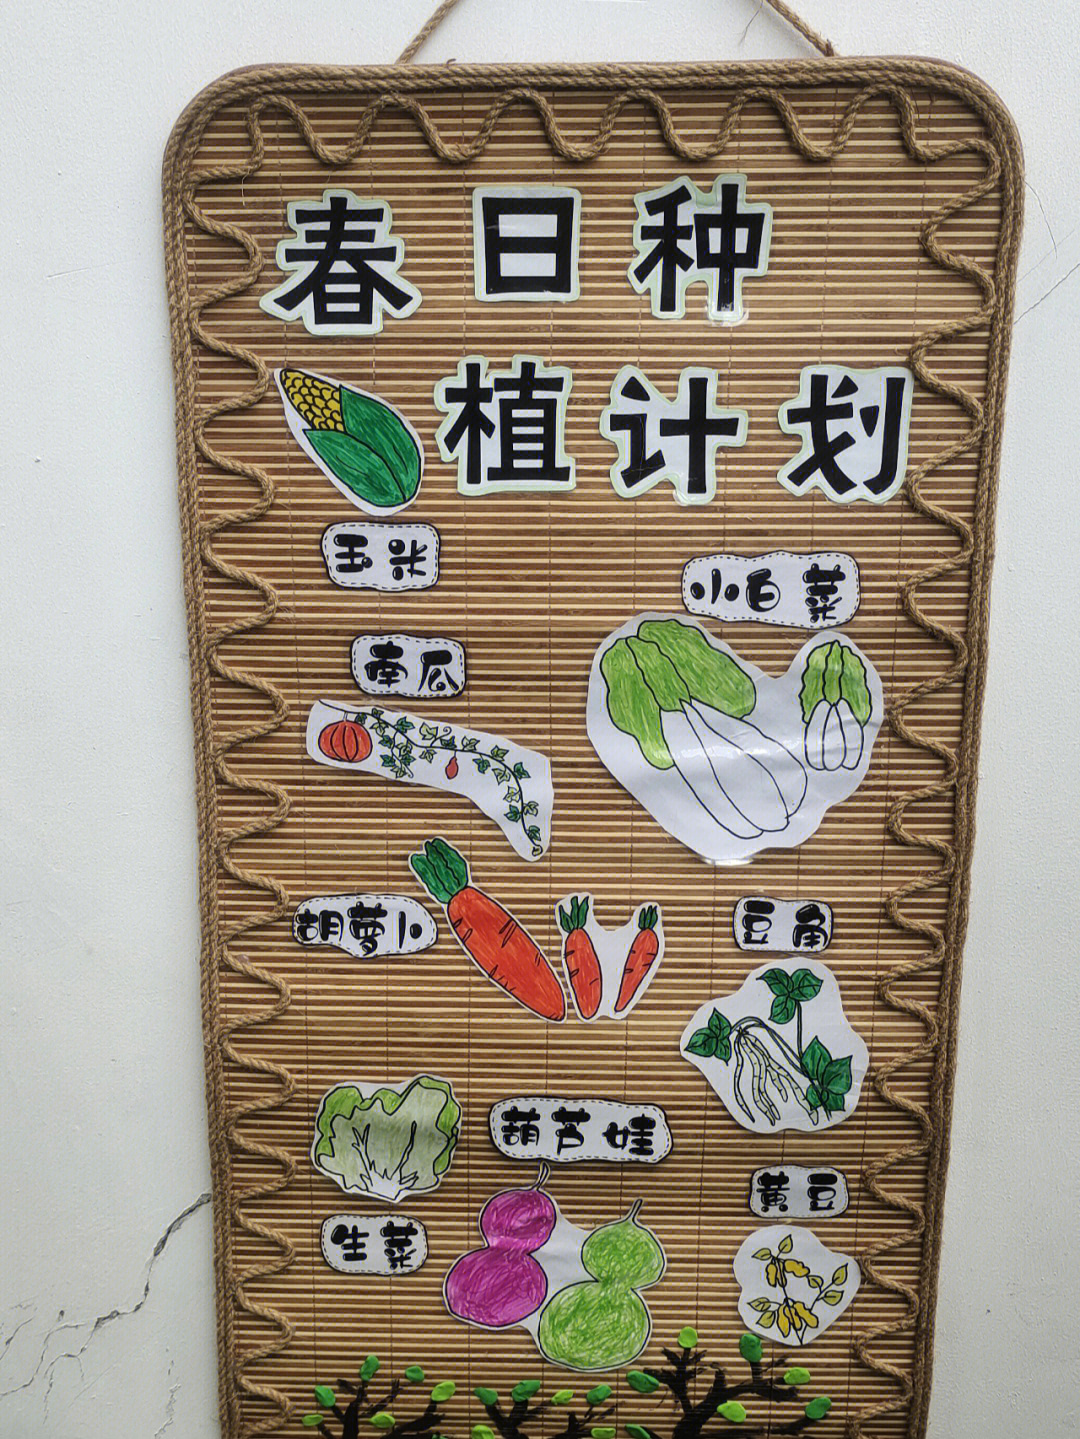 幼儿园植物种植计划表图片